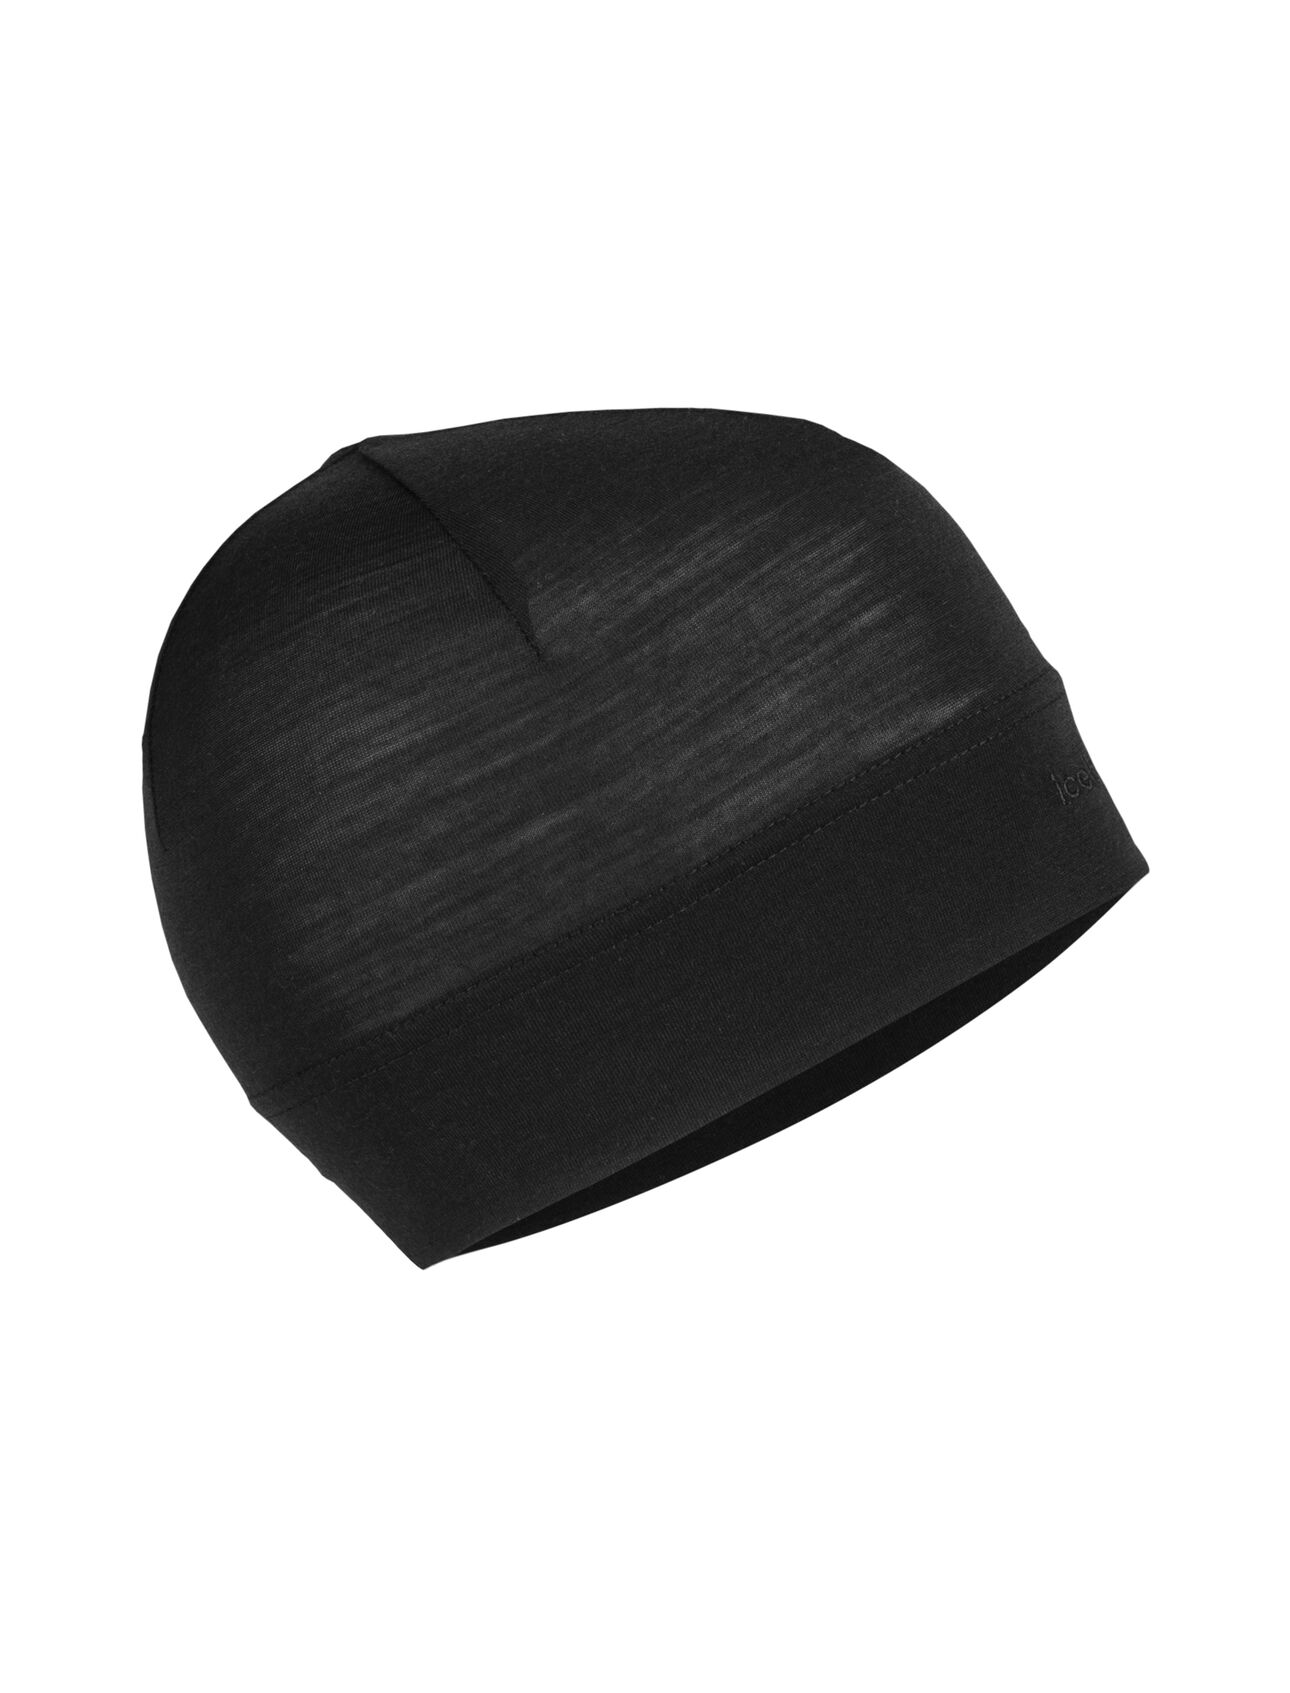 Bonnet Flexi Cool-Lite™ en mélange de mérinos Unisexe En mérinos extensible, ultraléger et parfait pour toutes les saisons, notre bonnet Flexi Cool-Lite™ est fait en jersey Cool-Lite™ respirant et résistant naturellement aux odeurs.